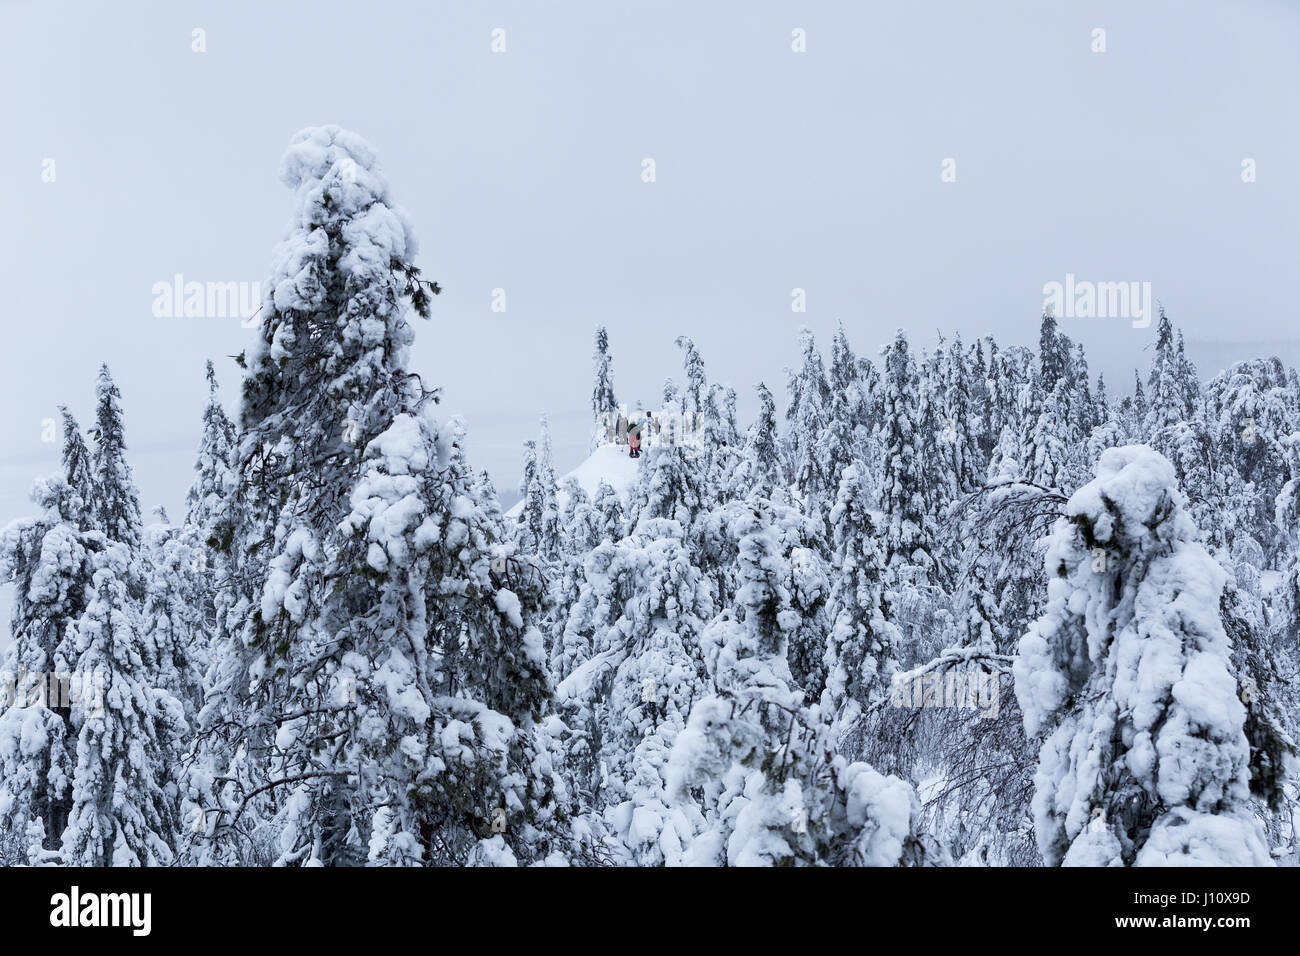 Le persone con le racchette da neve in inverno il paesaggio con alberi coperti di tykkylumi (corona snow-carico) in Koli National Park, Finlandia Foto Stock